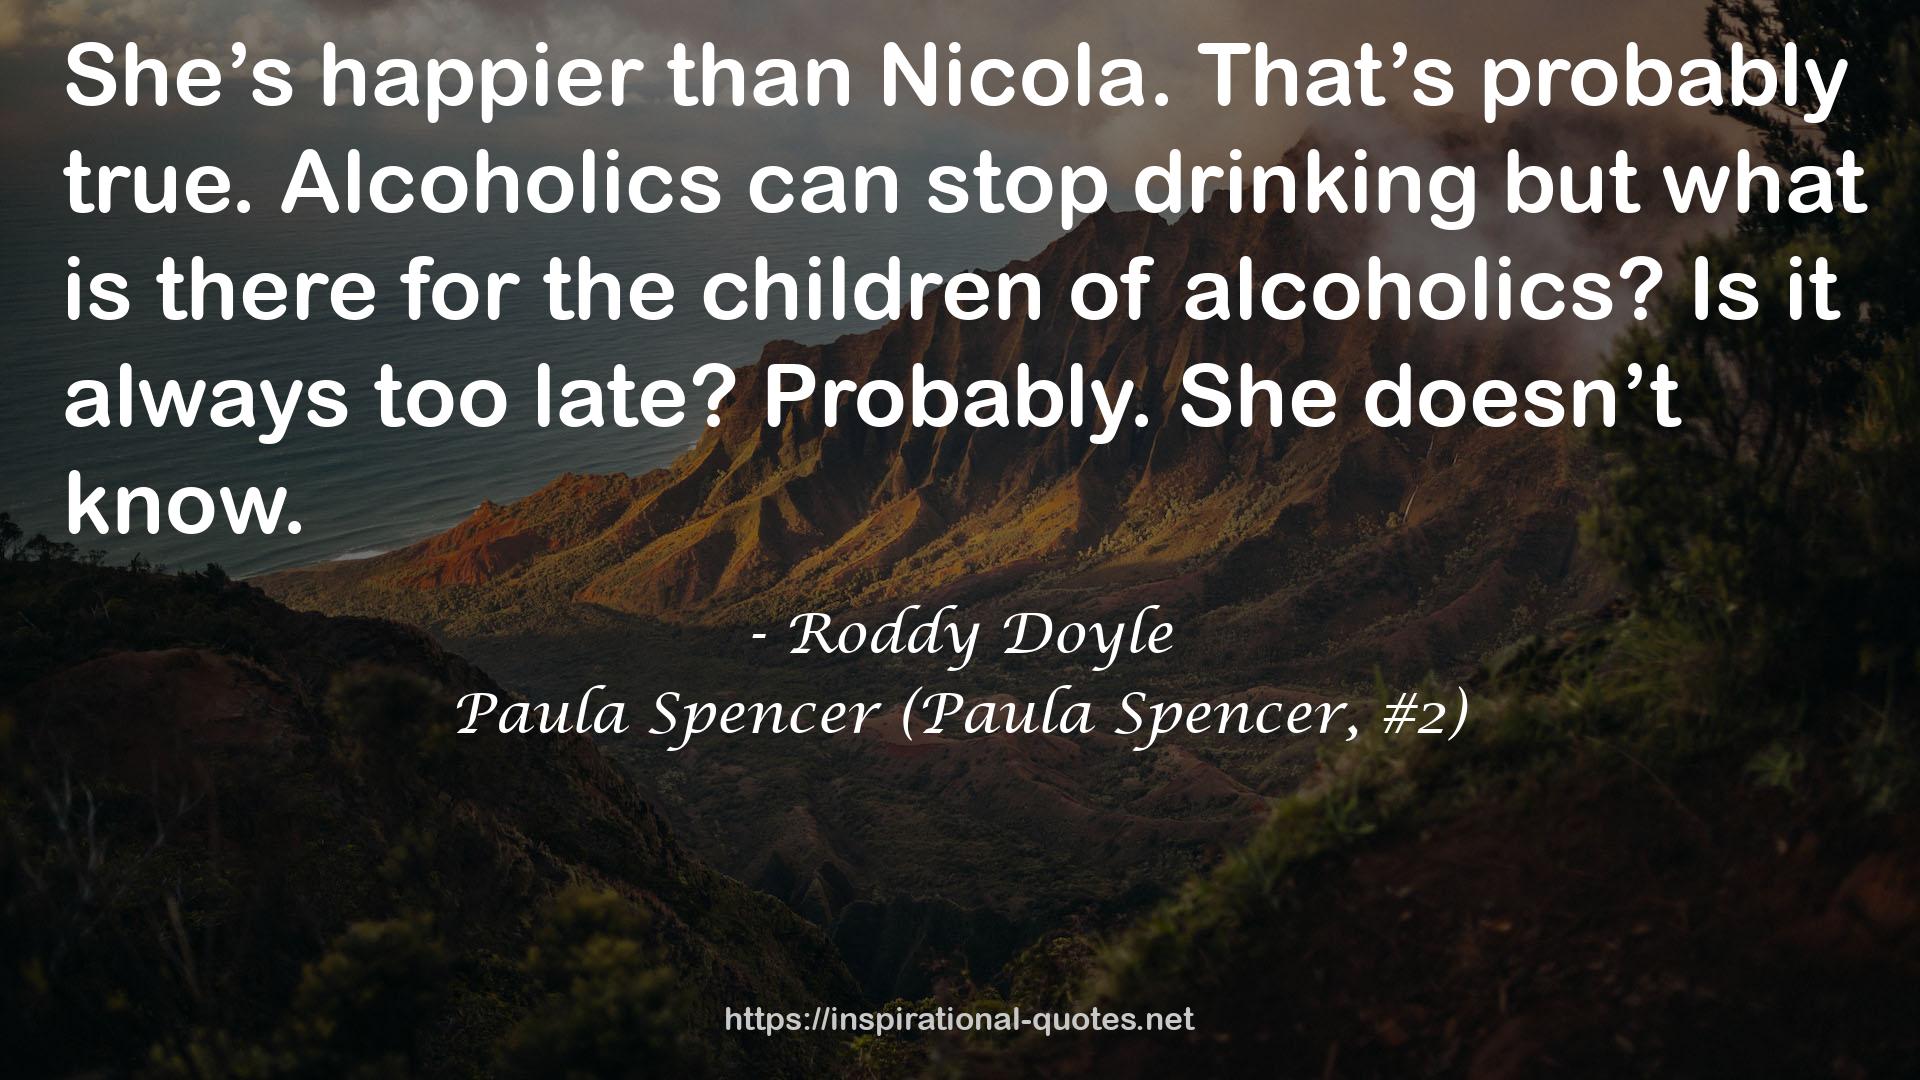 Paula Spencer (Paula Spencer, #2) QUOTES